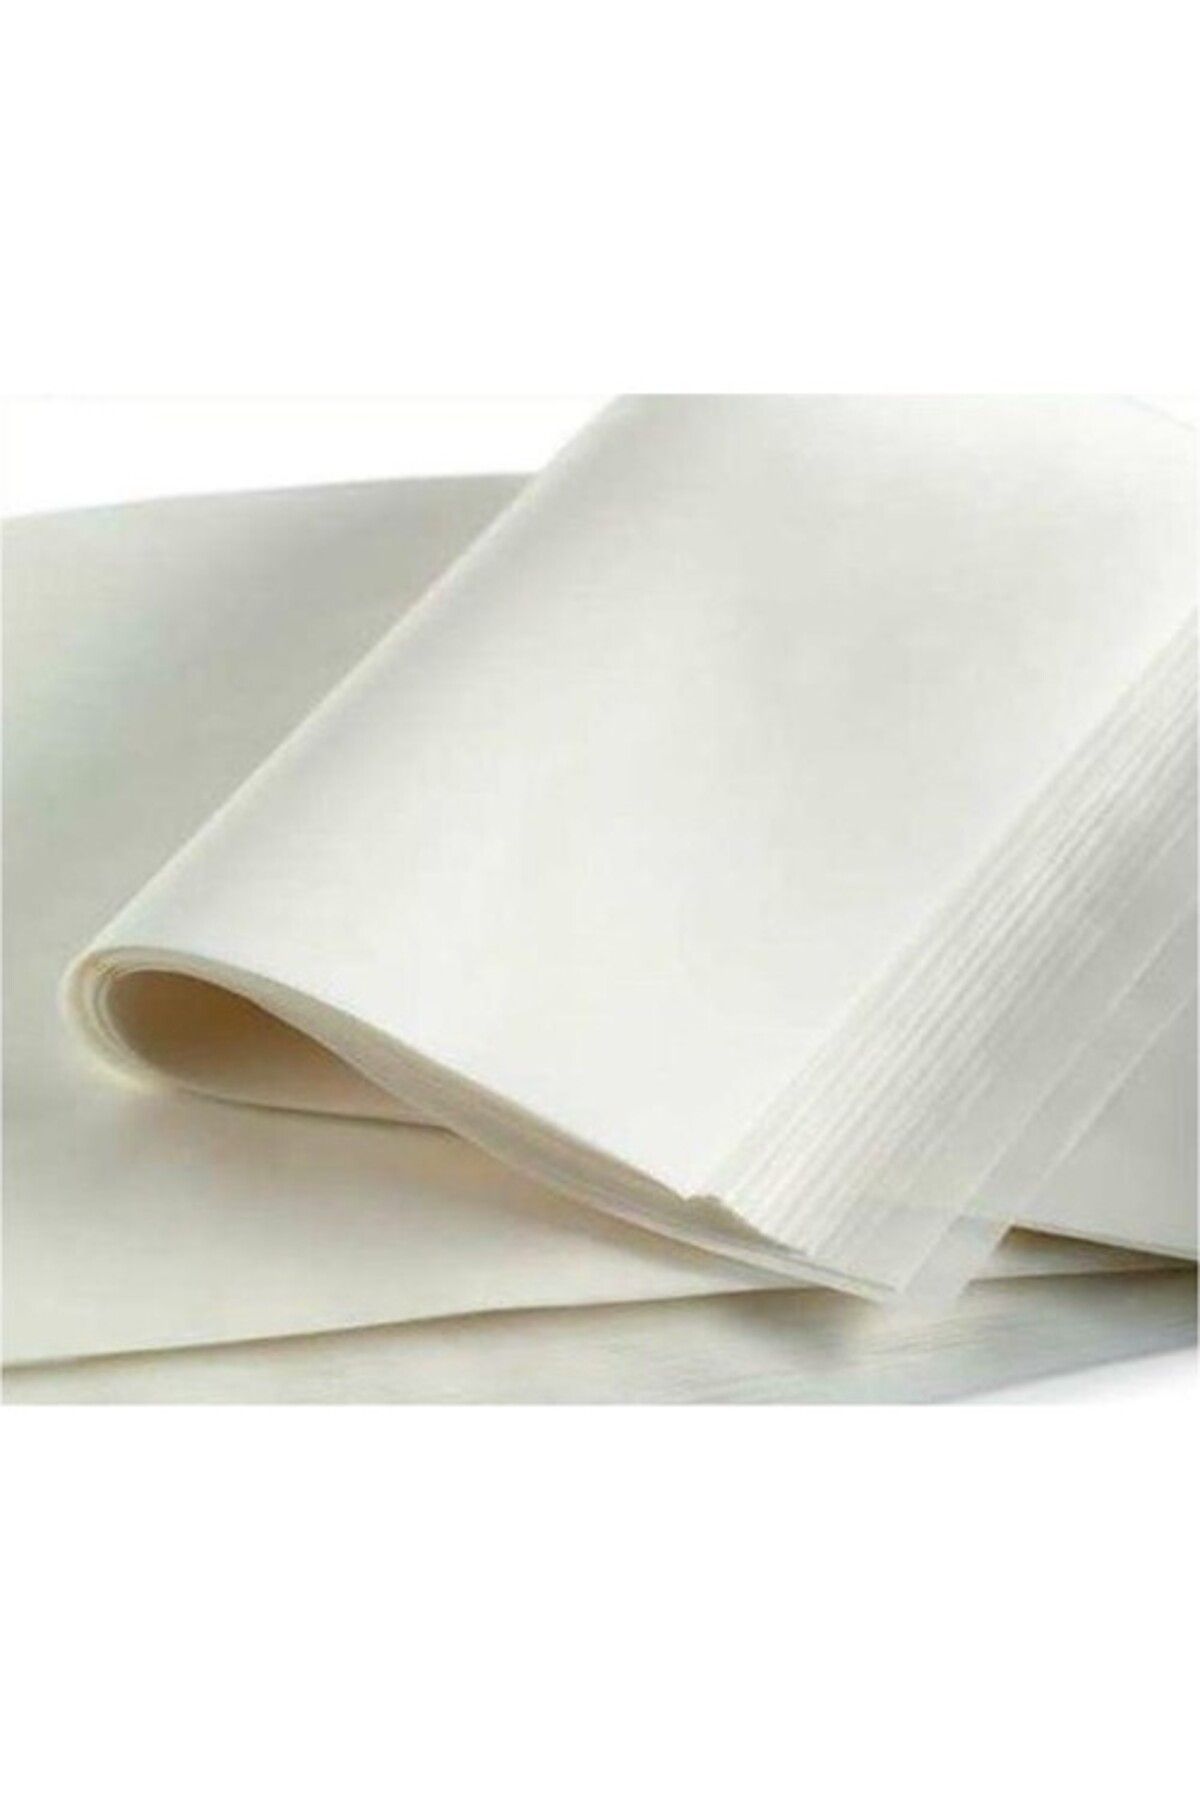 Glanart Parşömen Kağıdı Milaj Kağıdı 70x100 Ebat 10 Adet Yağlı Çizim Kağıdı